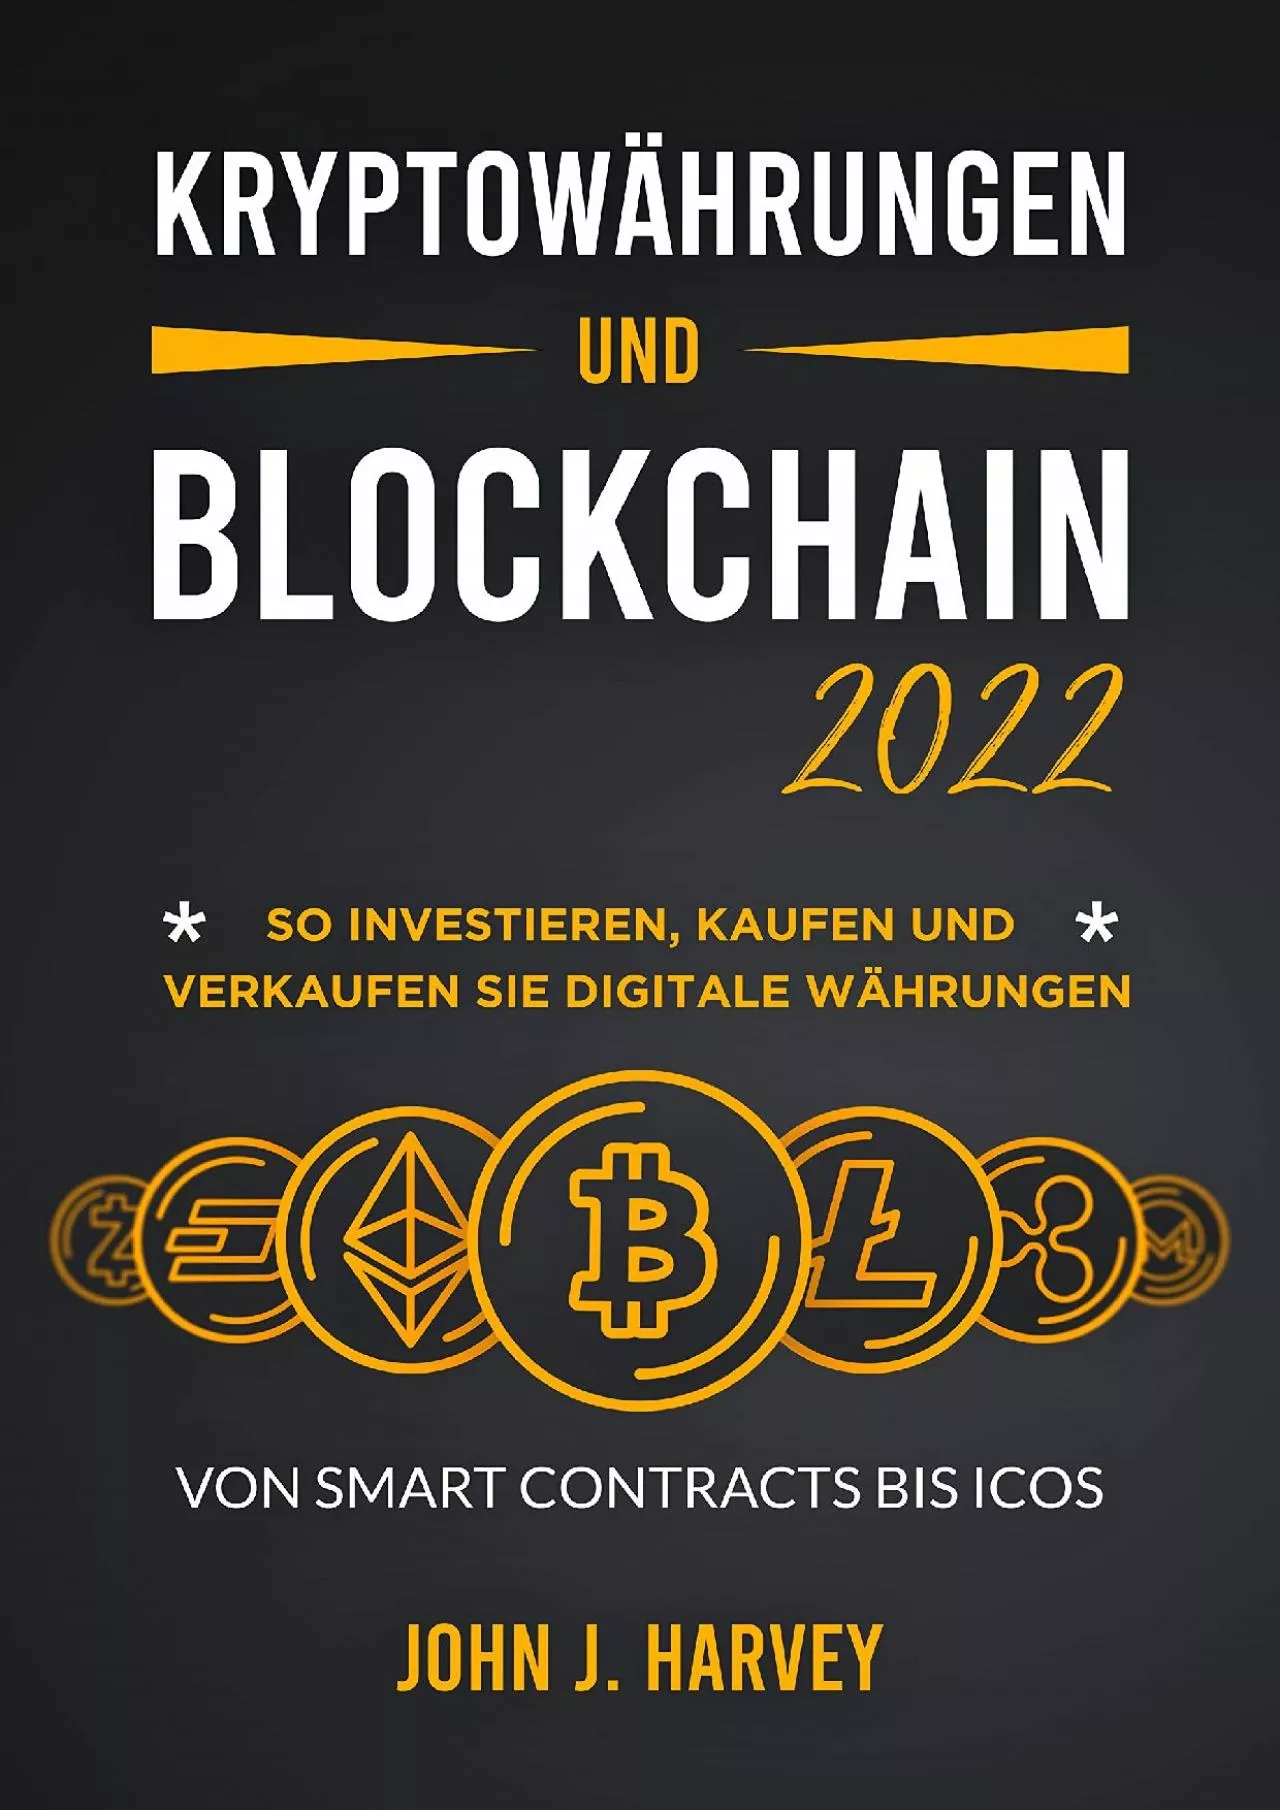 (BOOK)-Kryptowährungen und Blockchain 2022: So investieren, kaufen und verkaufen Sie